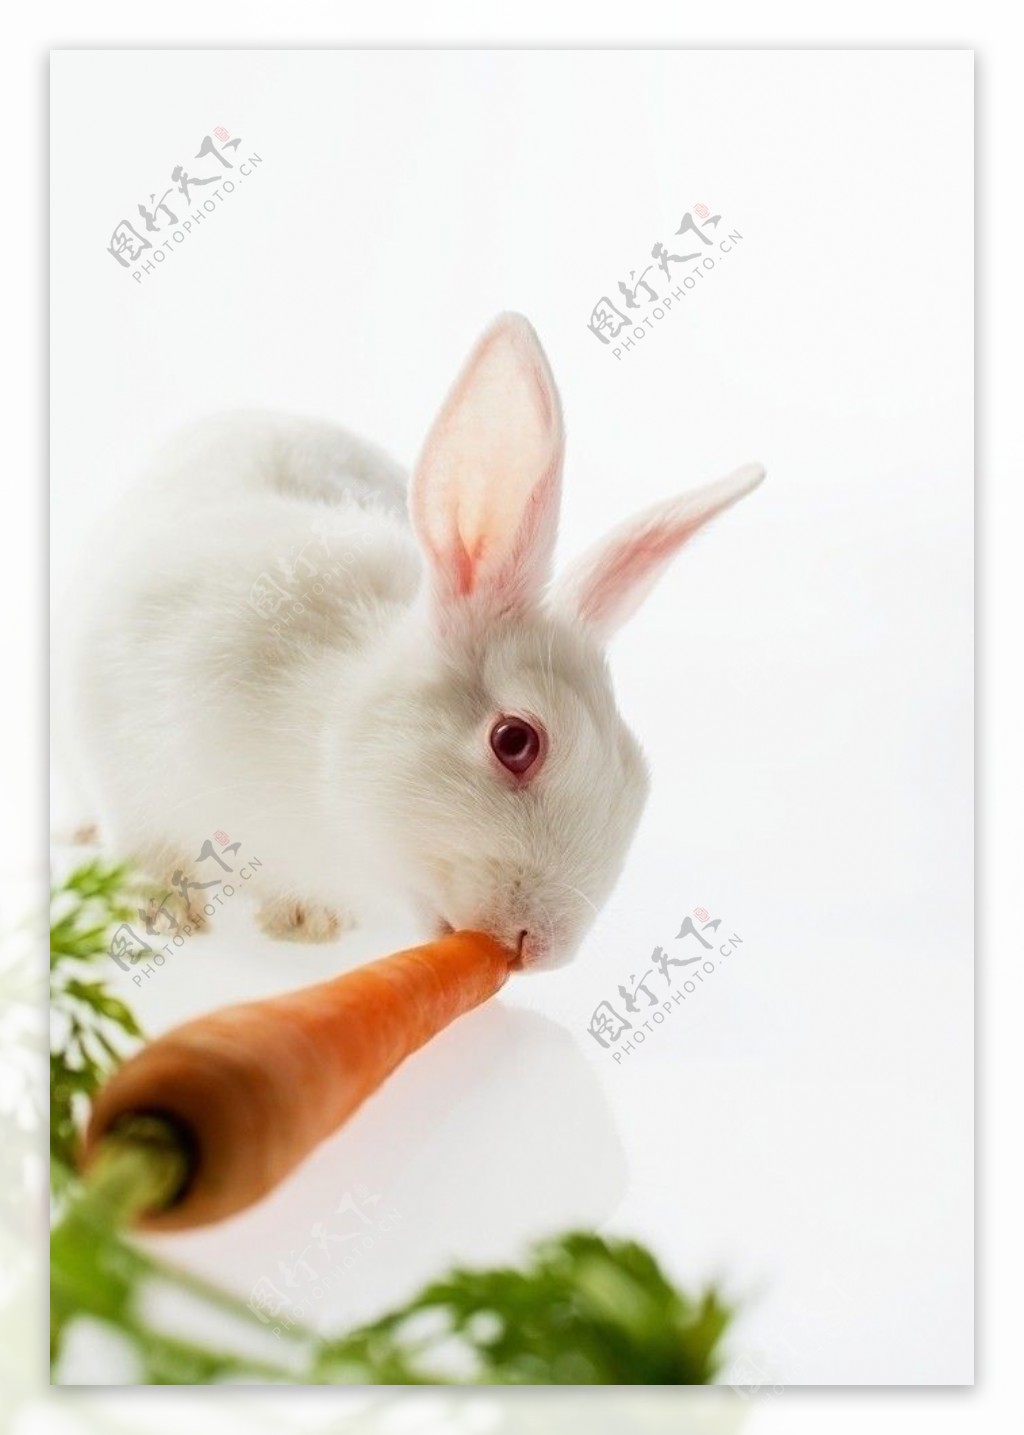 吃萝卜的小白兔图片